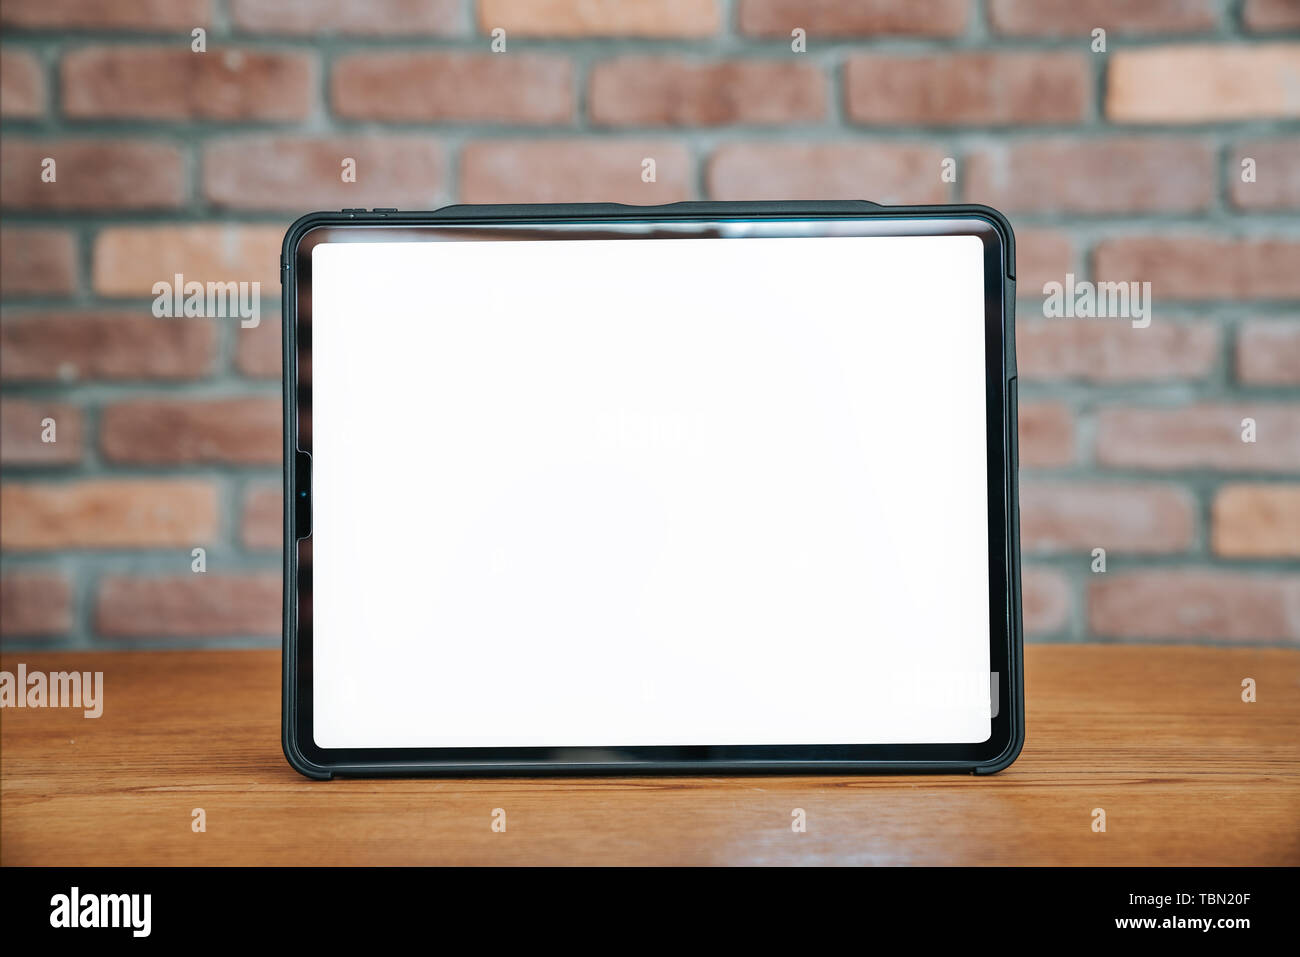 Tablette noir avec écran vide sur la table en bois.concept publicitaire de la technologie. Banque D'Images